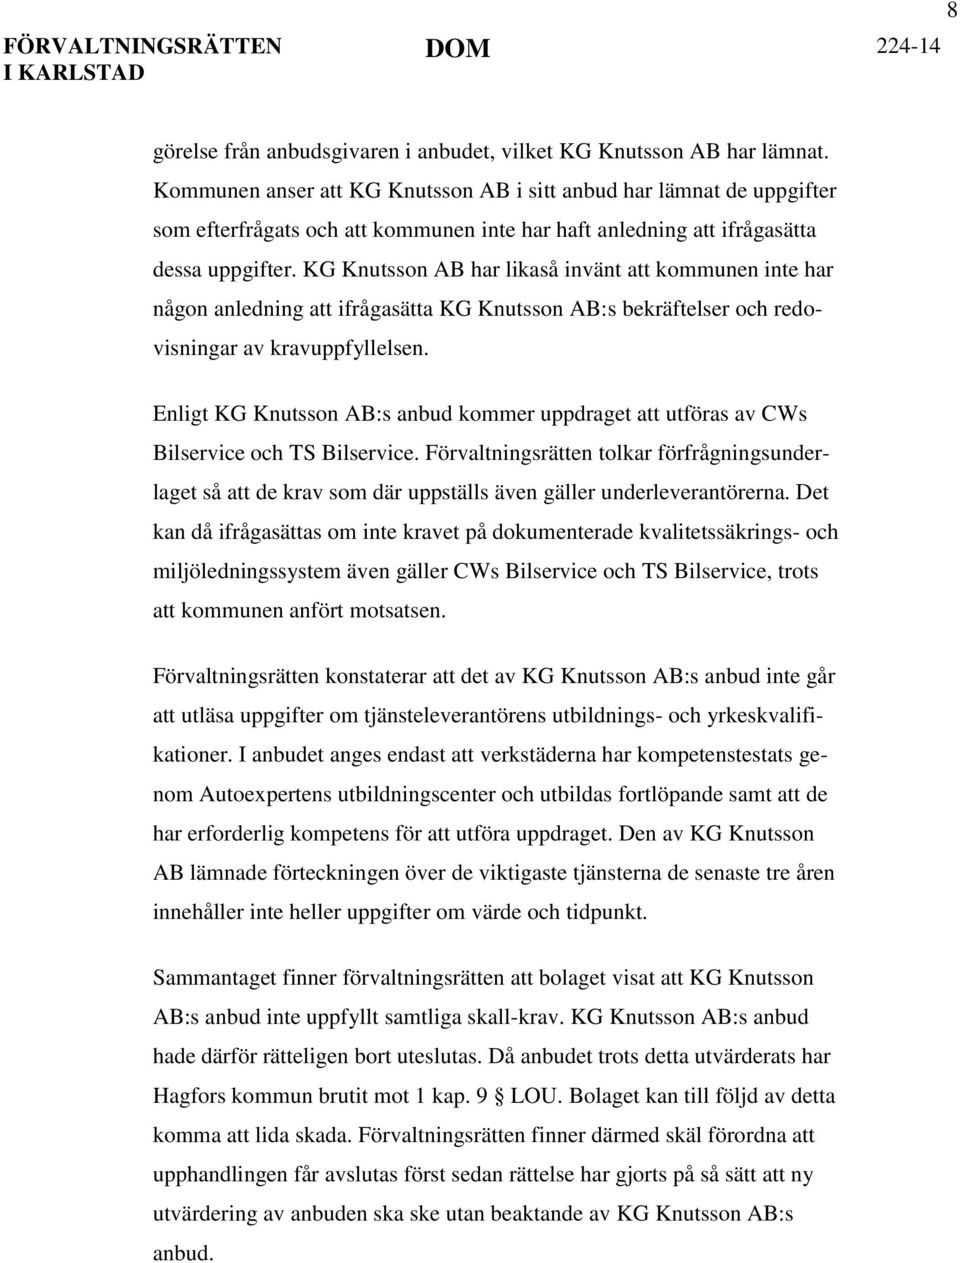 KG Knutsson AB har likaså invänt att kommunen inte har någon anledning att ifrågasätta KG Knutsson AB:s bekräftelser och redovisningar av kravuppfyllelsen.